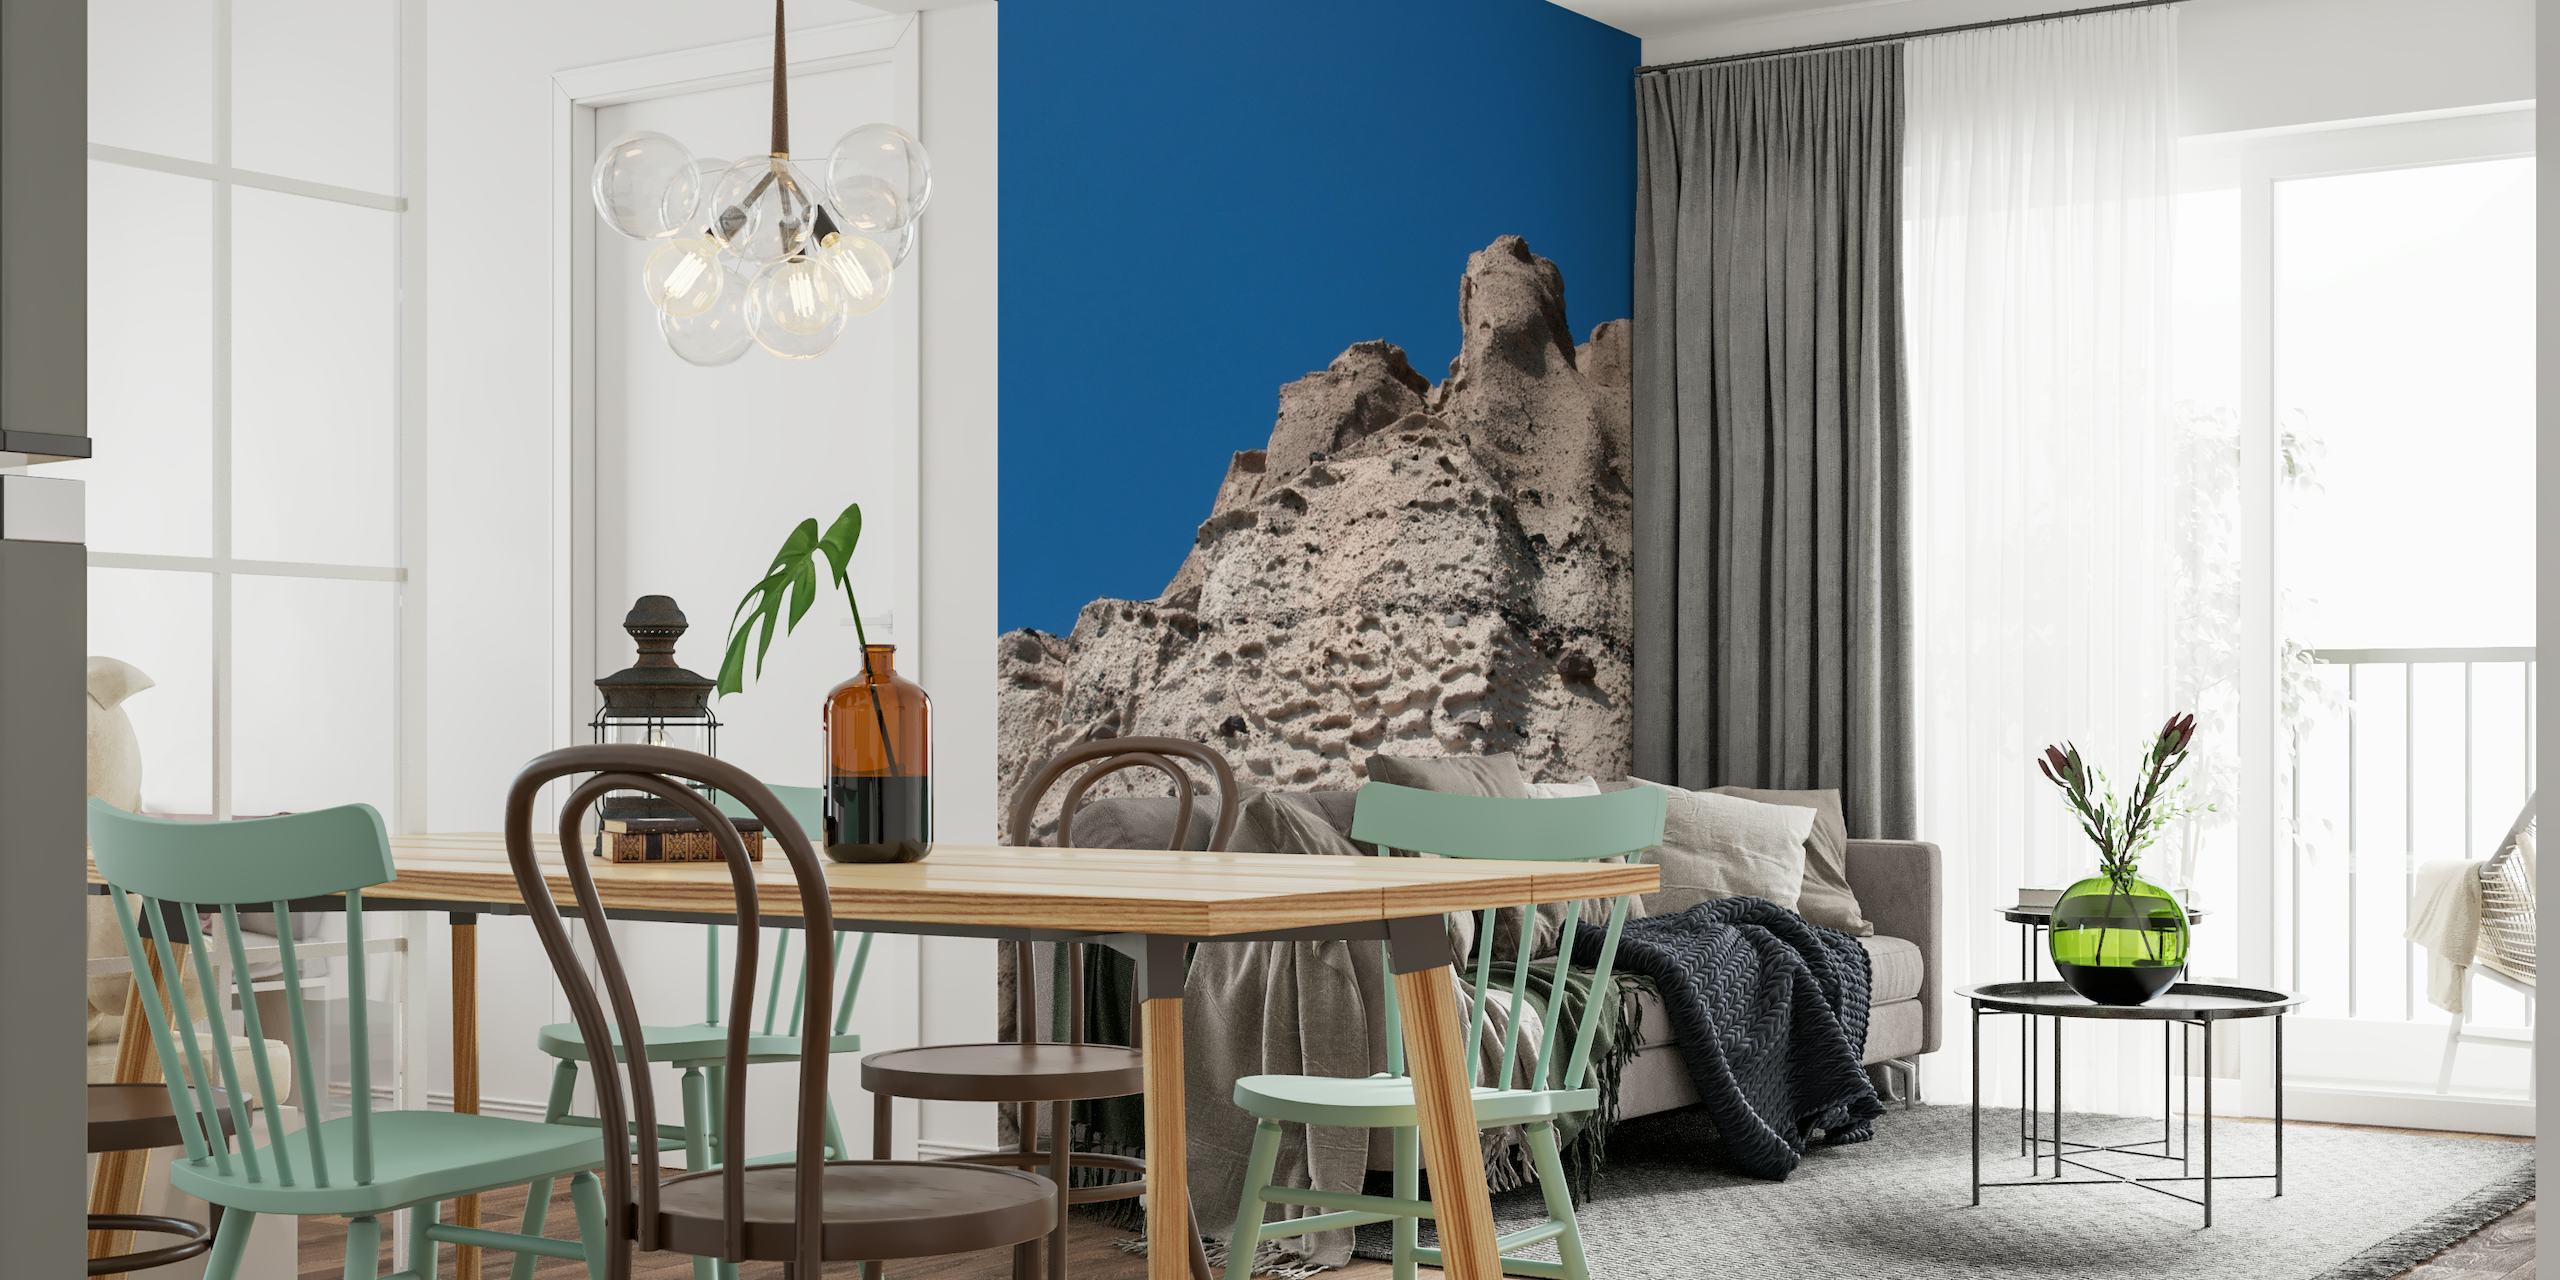 Santorinin tulivuoren seinämaalaus, jossa on kuvioituja maanläheisiä sävyjä